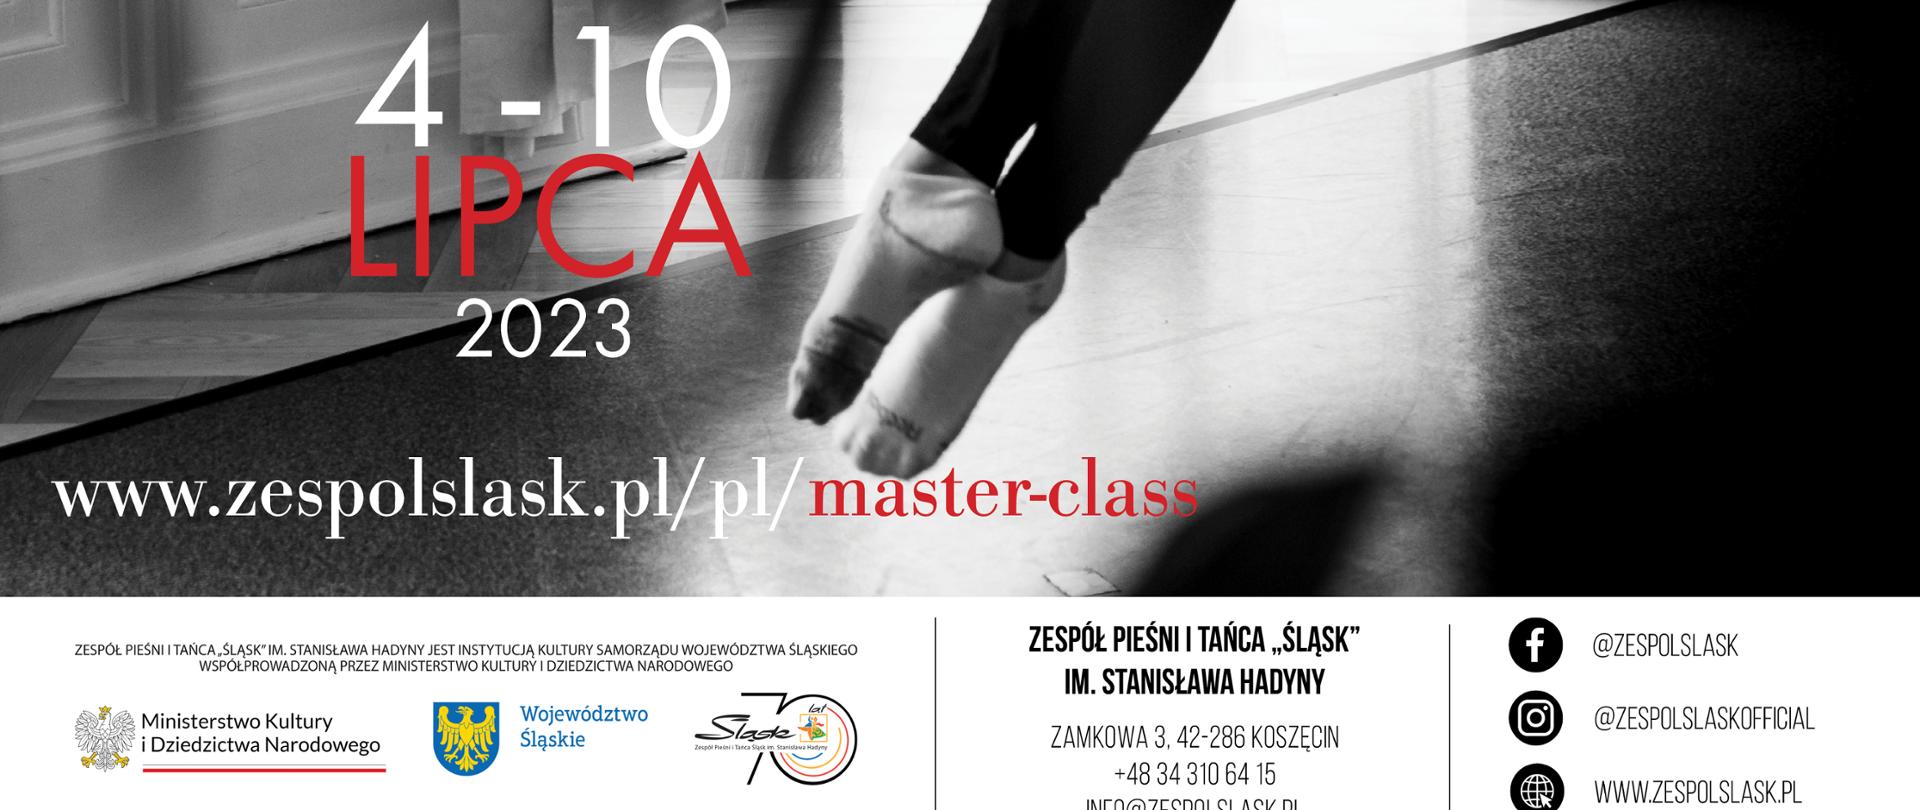 plakat warsztatów Master Class dla uczniów szkół baletowych w Koszęcinie w dniach 4-10 lipca 2023 r. Na czarno-białym zdjęciu tancerka w skoku na sali baletowej.